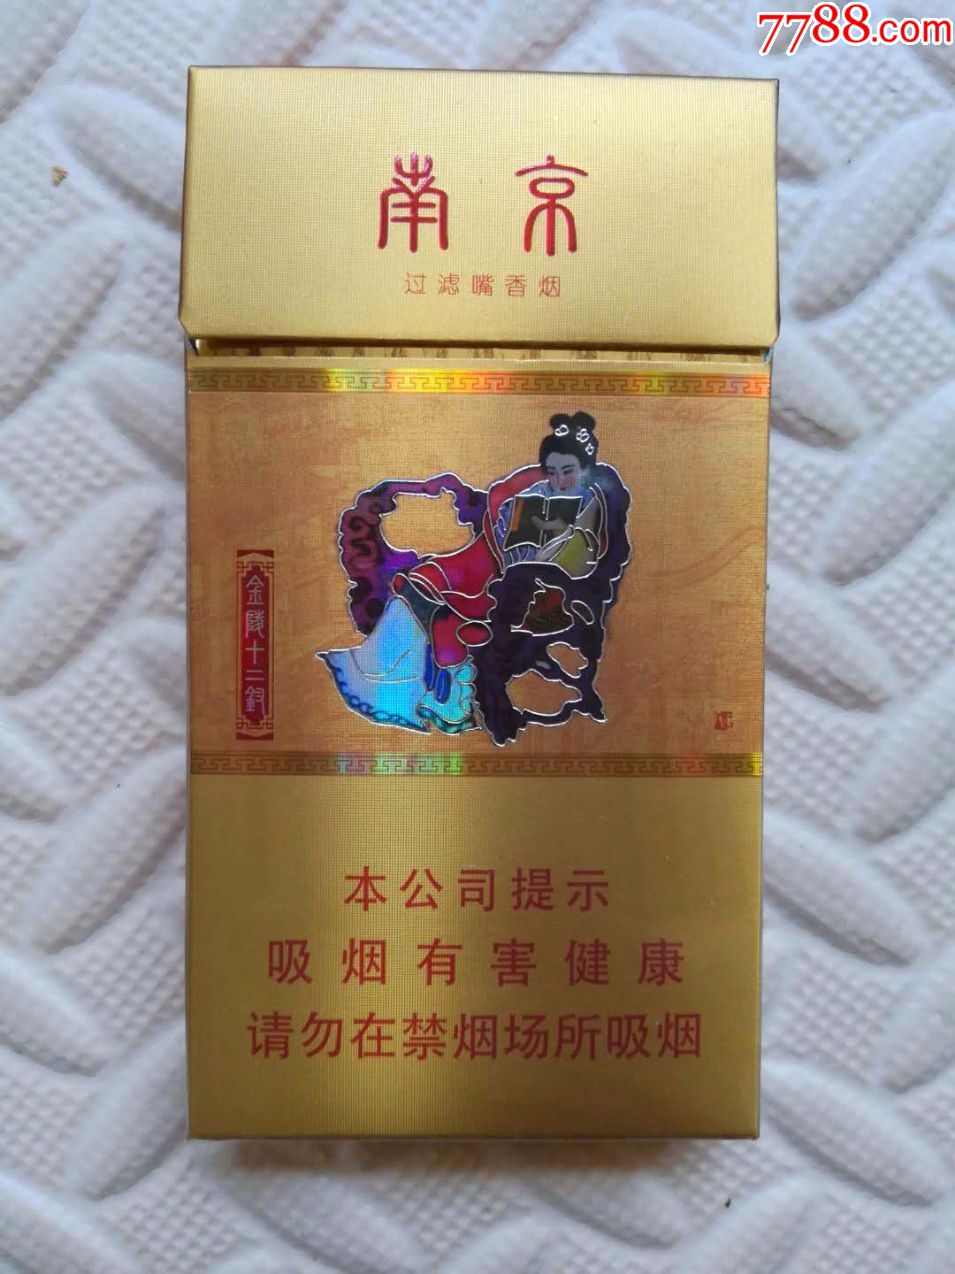 南京烟的壁纸图片